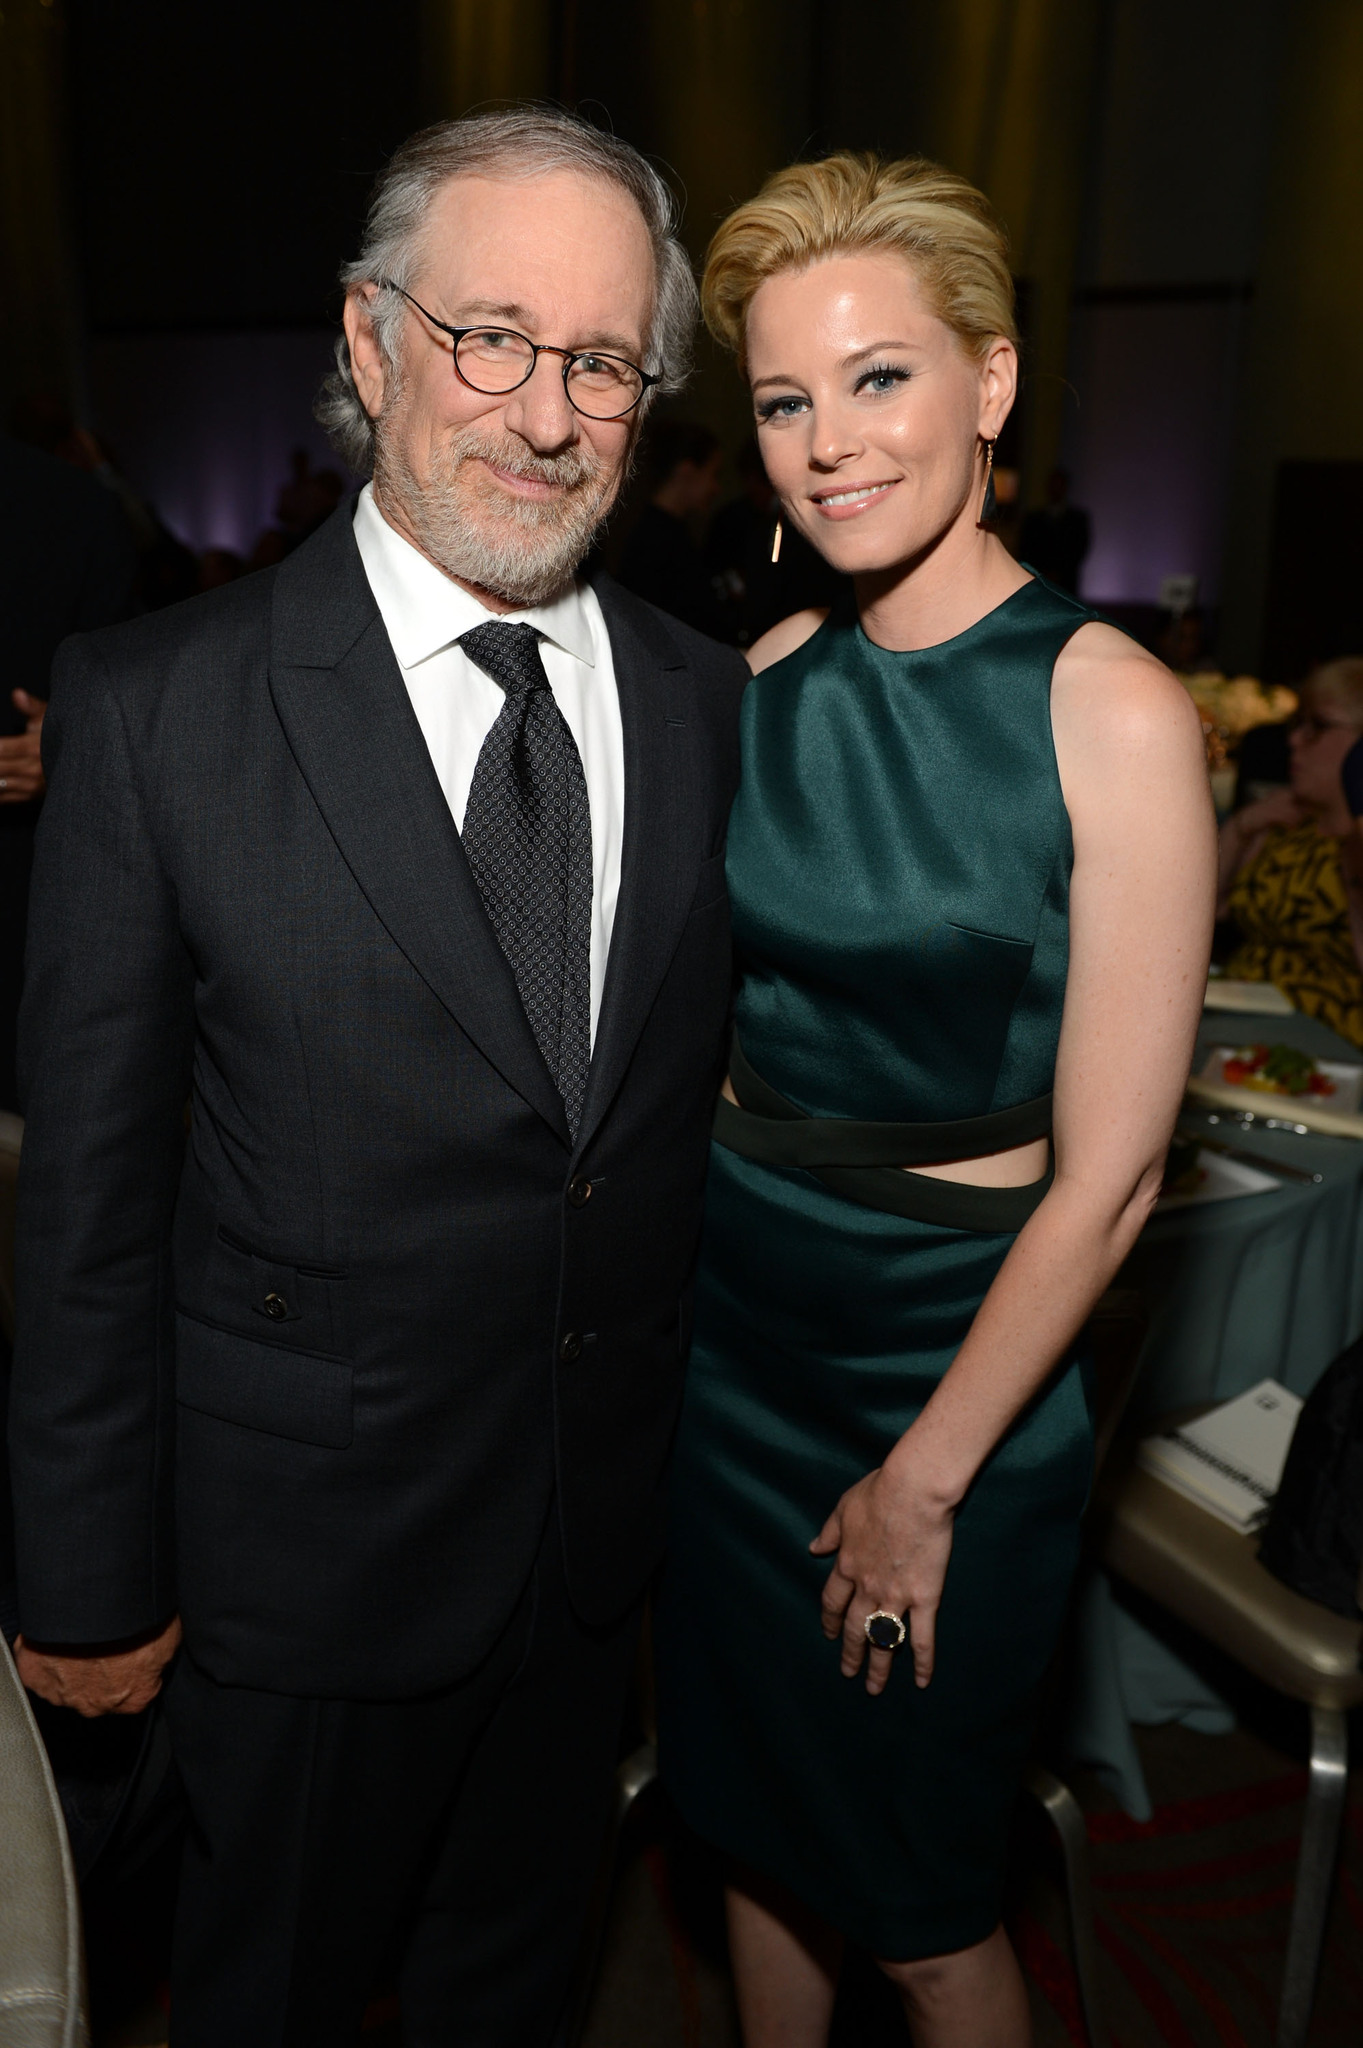 Steven Spielberg and Elizabeth Banks